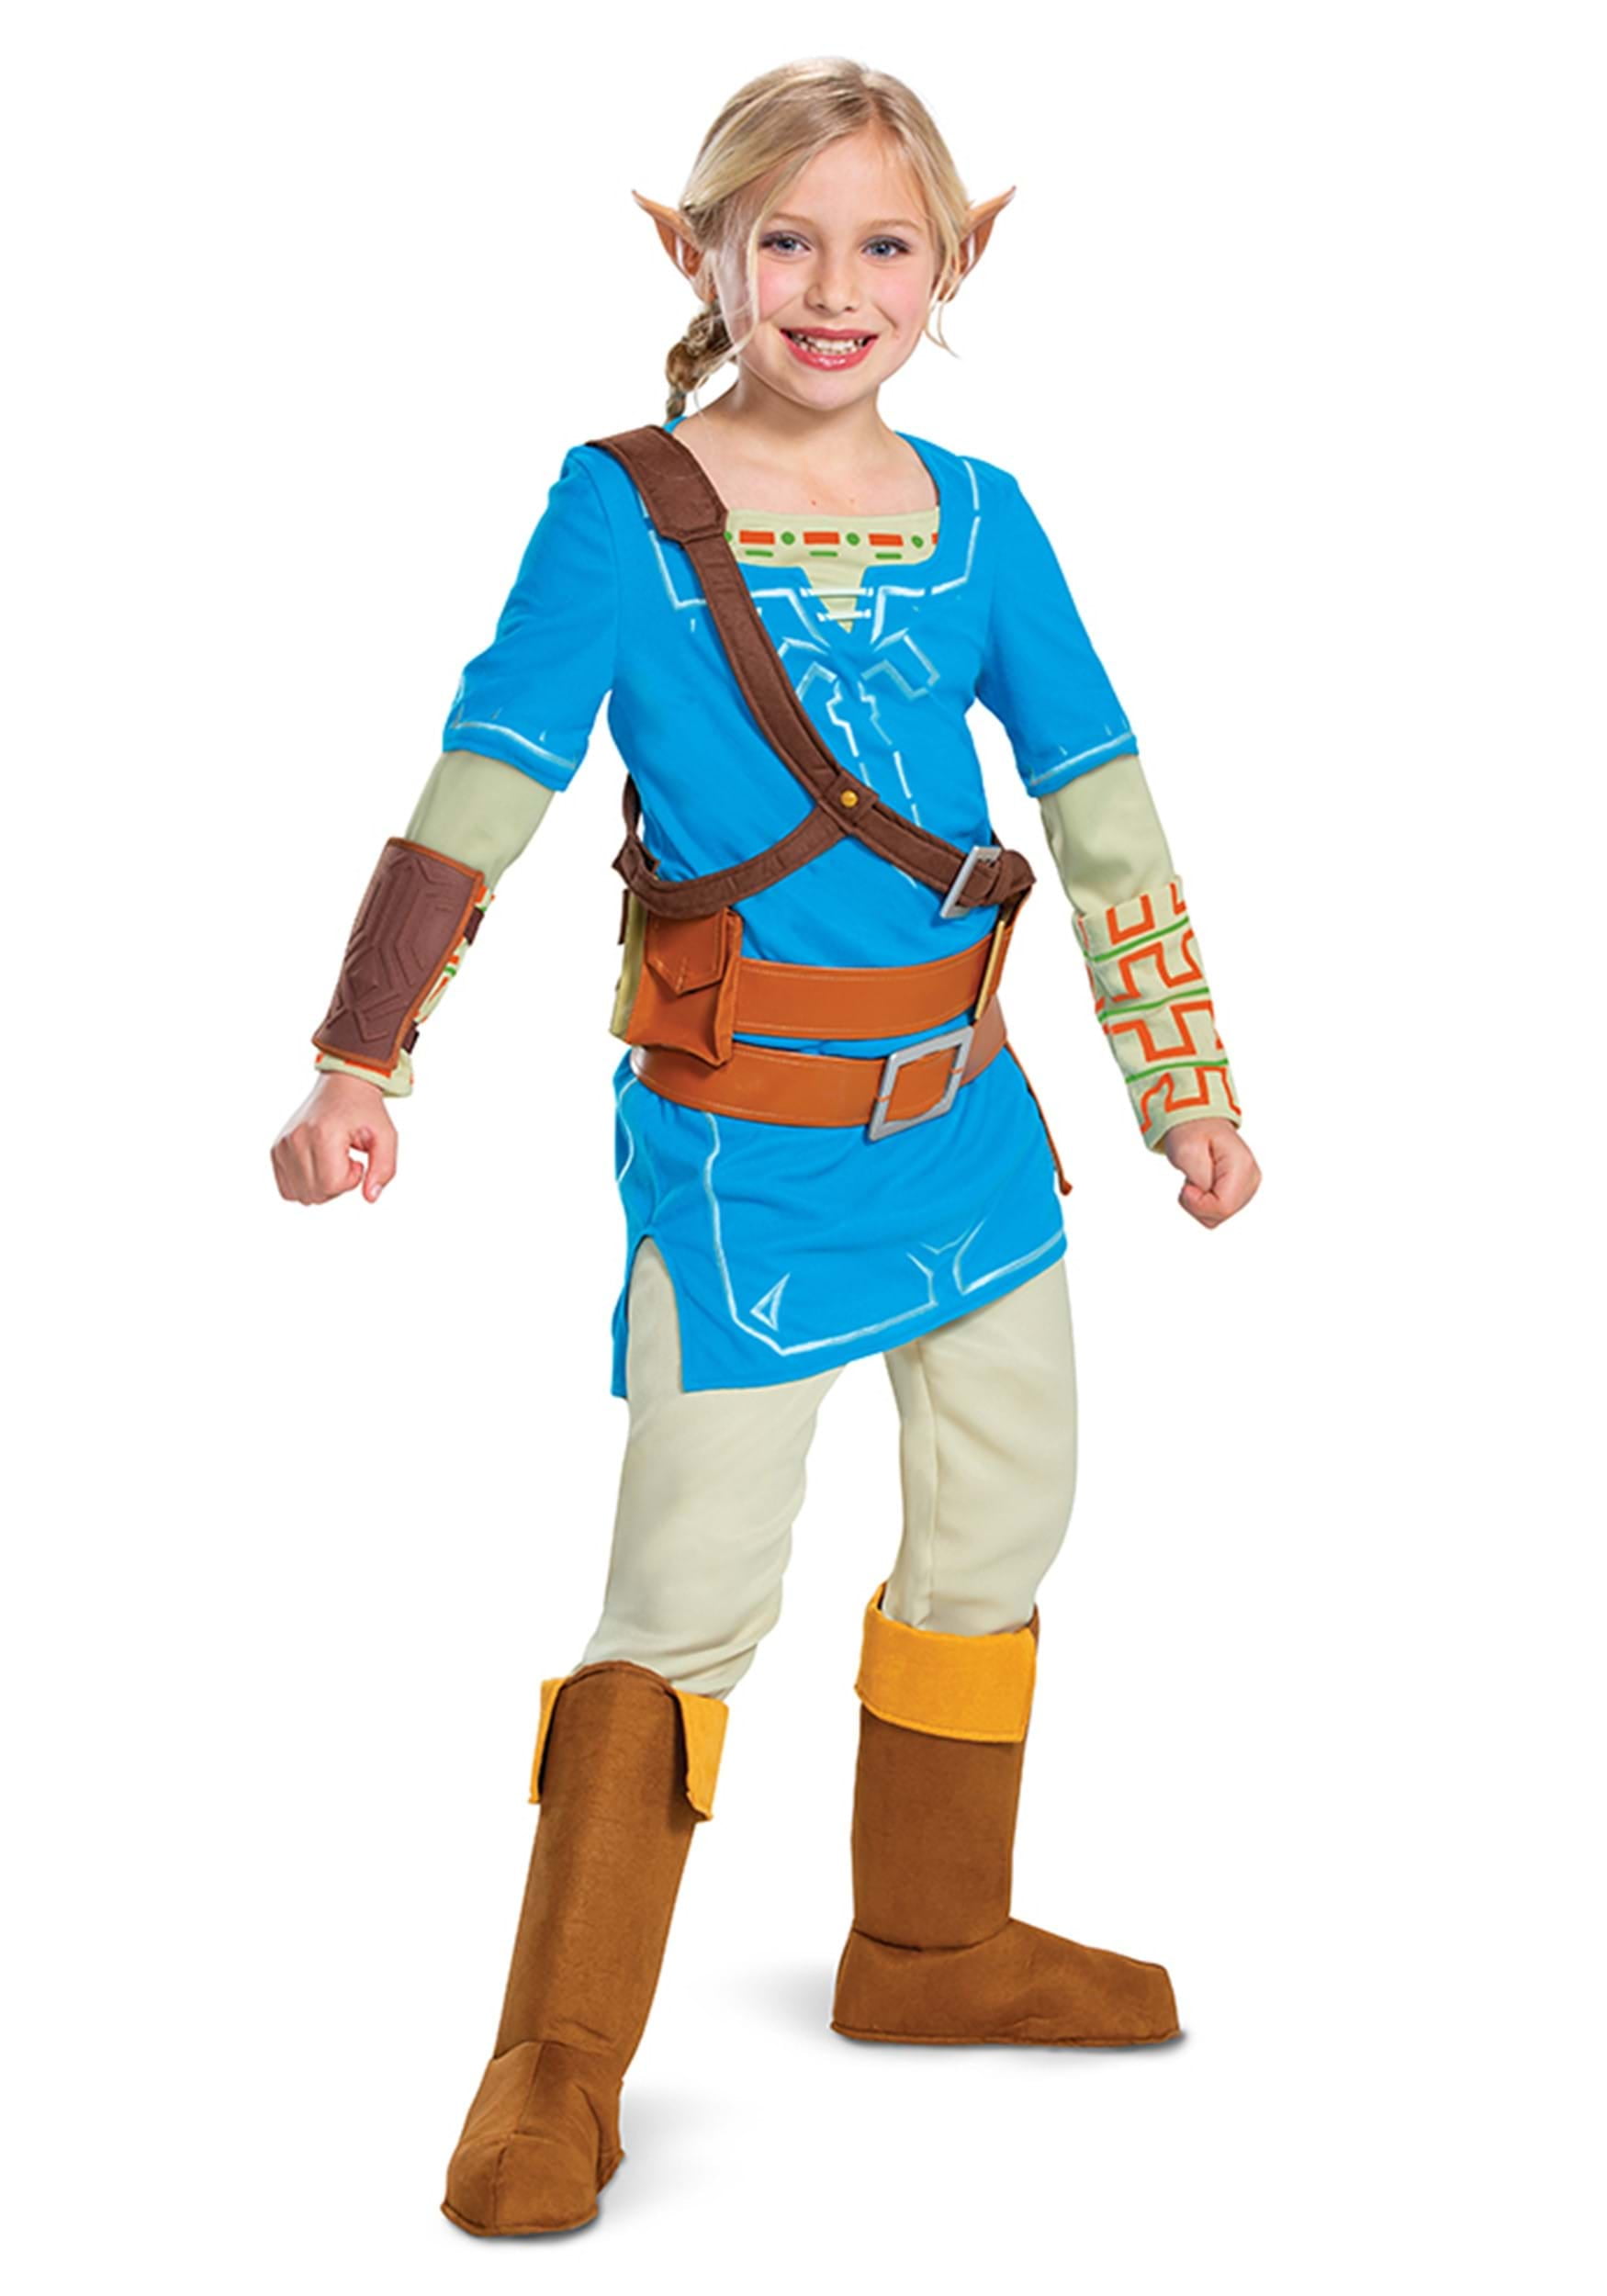 Legend Of Zelda Deluxe Child Costume Girls Halloween Fancy Dress Disguise 